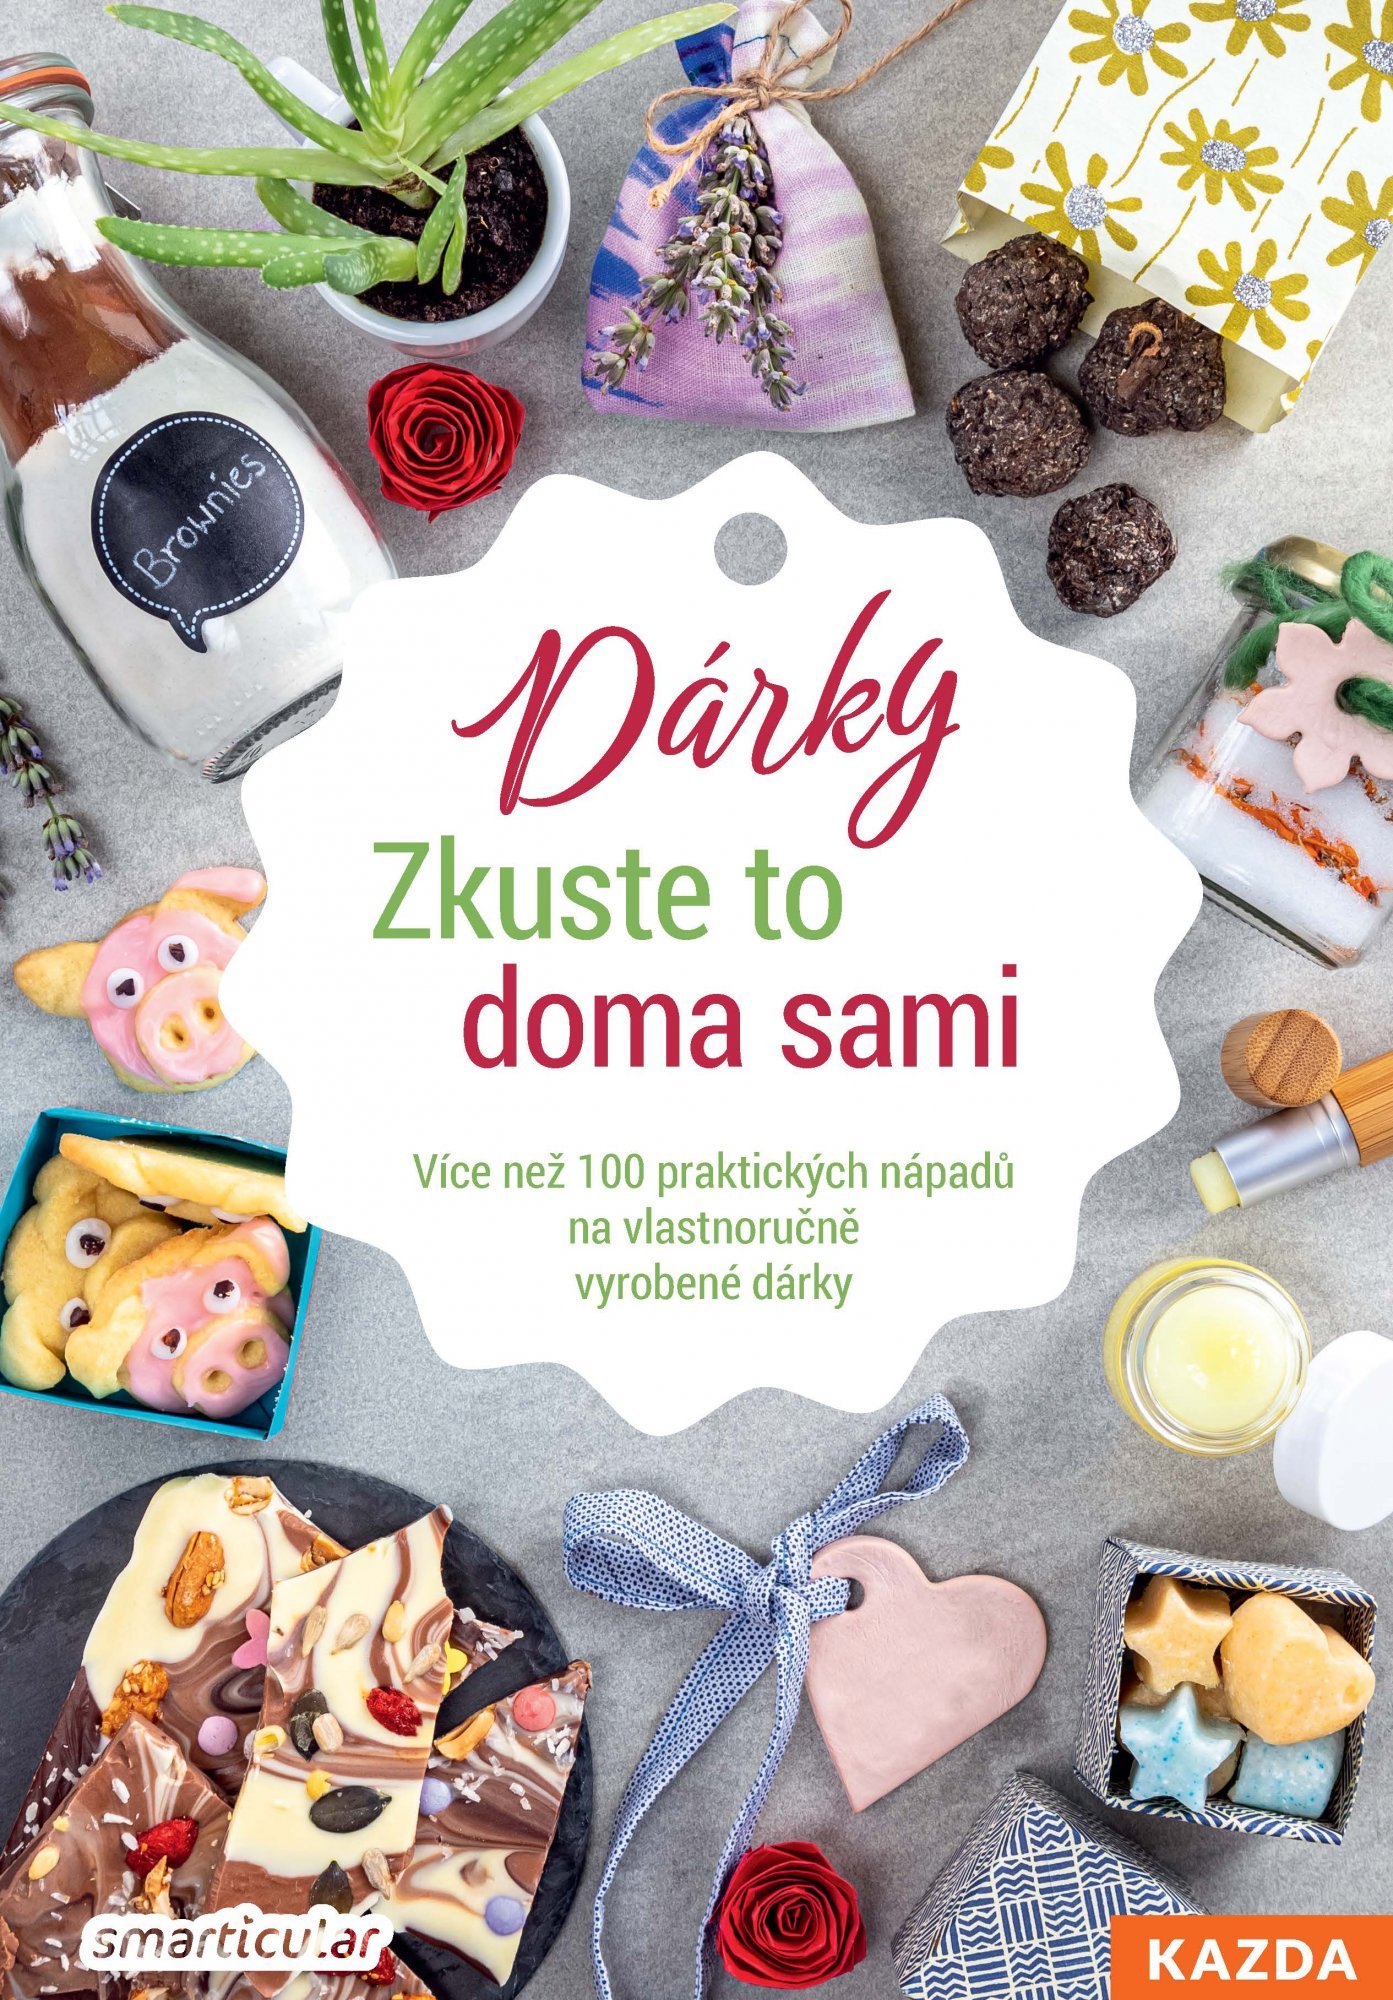 Levně Dárky - Zkuste to doma sami - smarticular.net